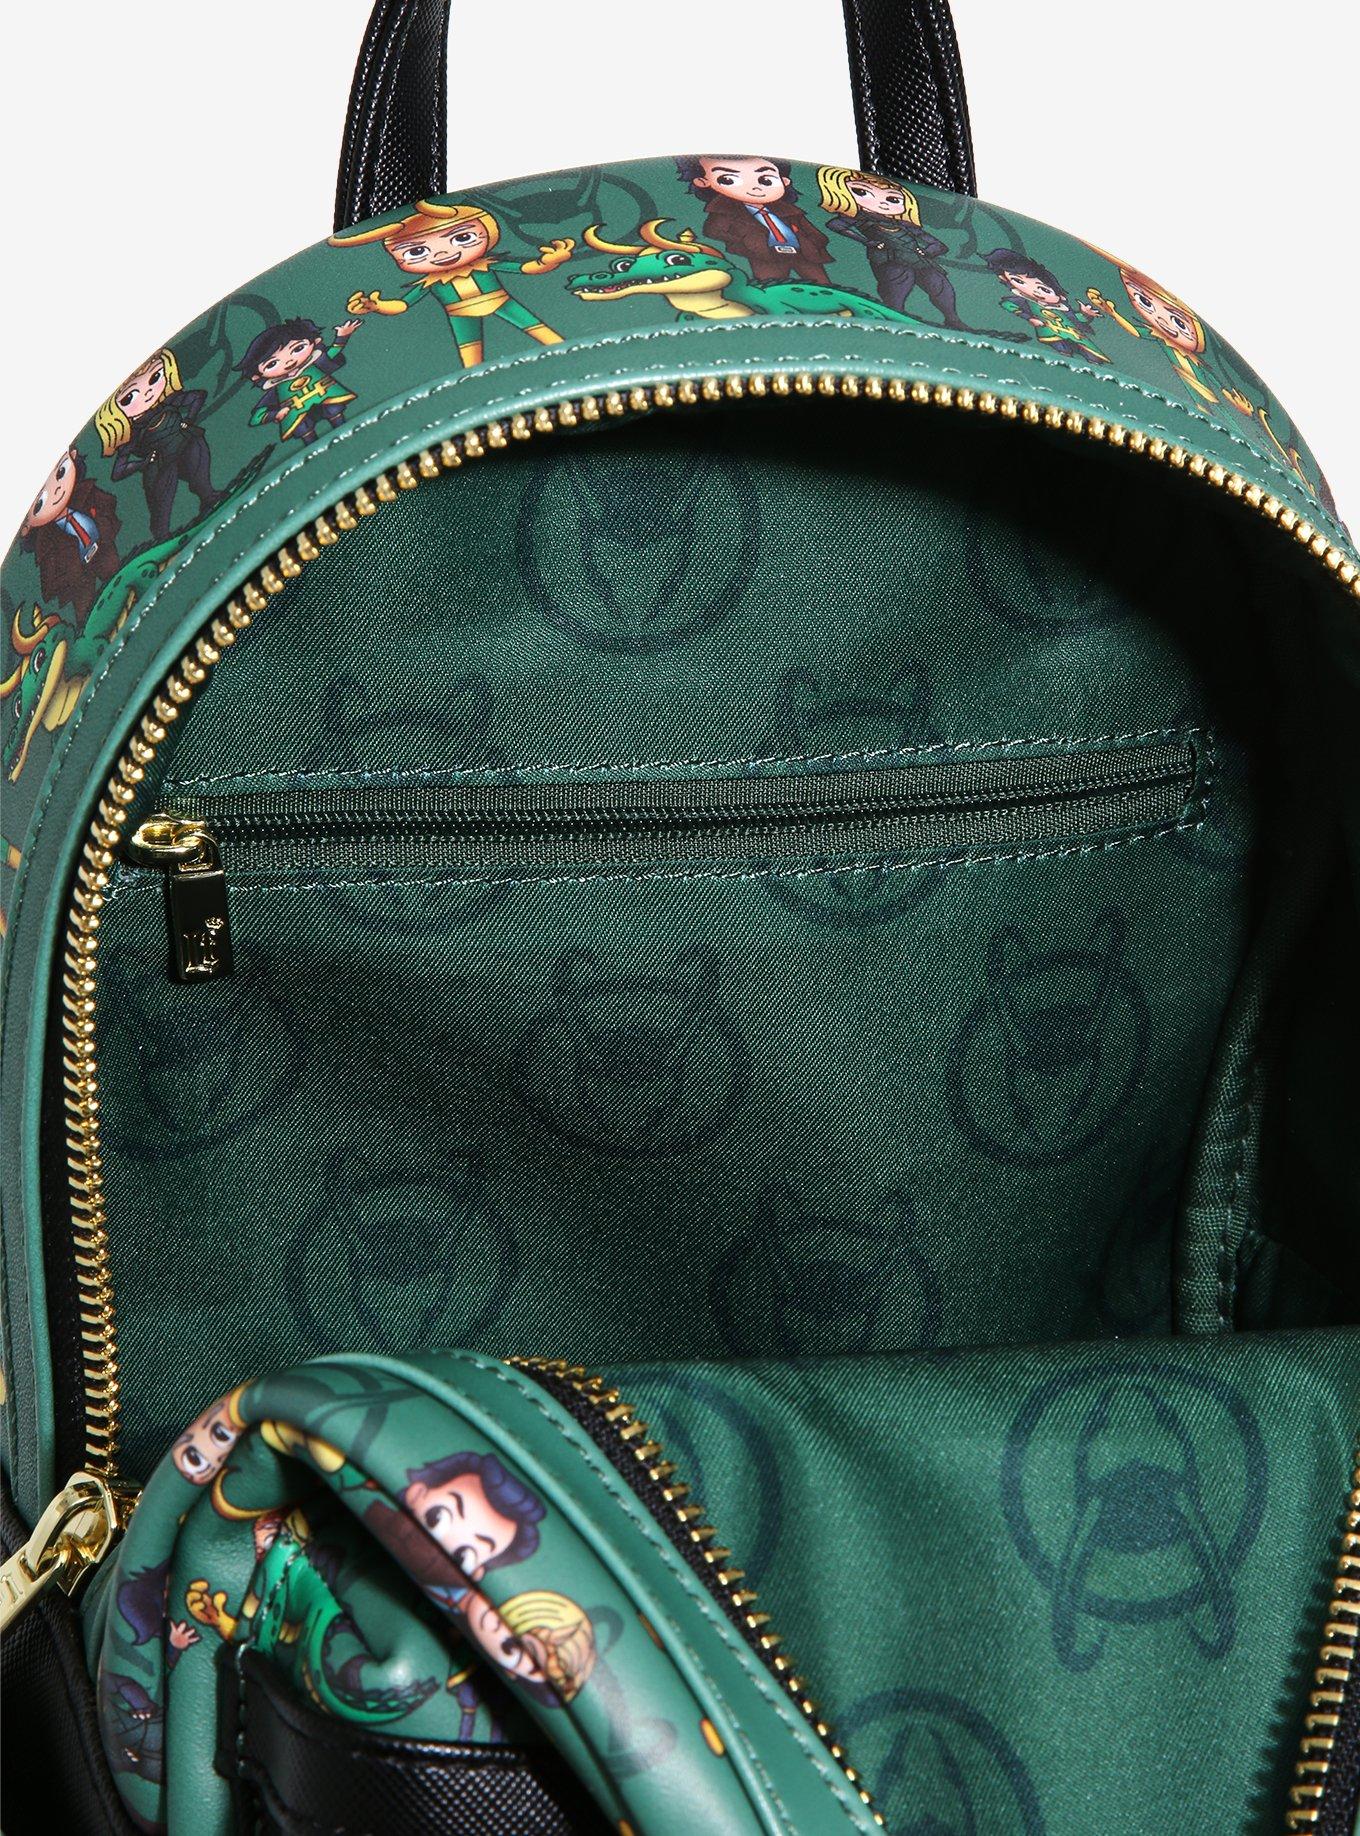 NEW Loungefly Disney Marvel LOKI Variants Kid Alligator Sylvie Mini Backpack  Bag